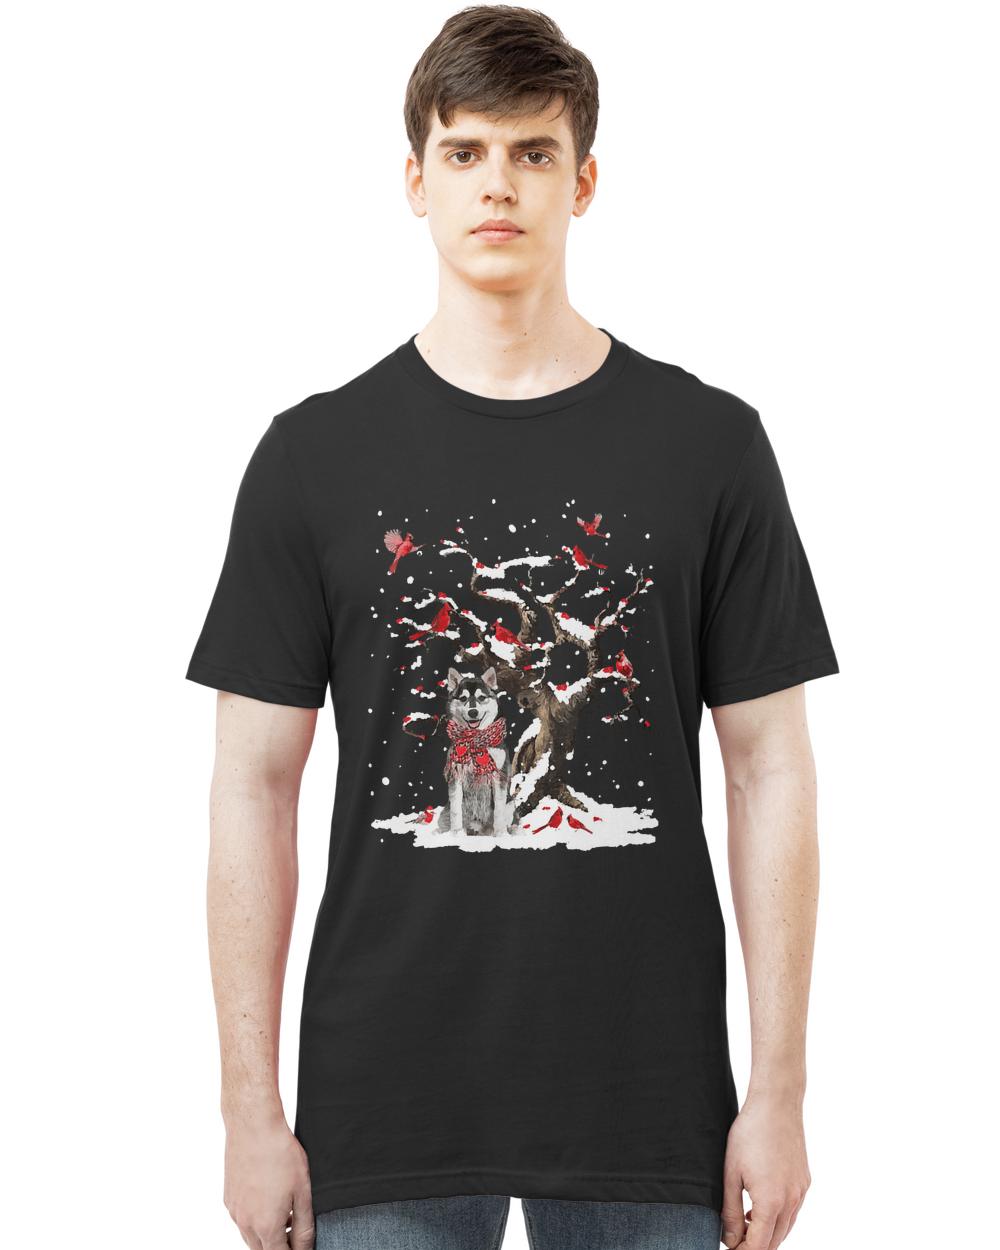 Husky Scarf Cardinal Snow Christmas T-ShirtHusky Scarf Cardinal Snow Christmas T-Shirt